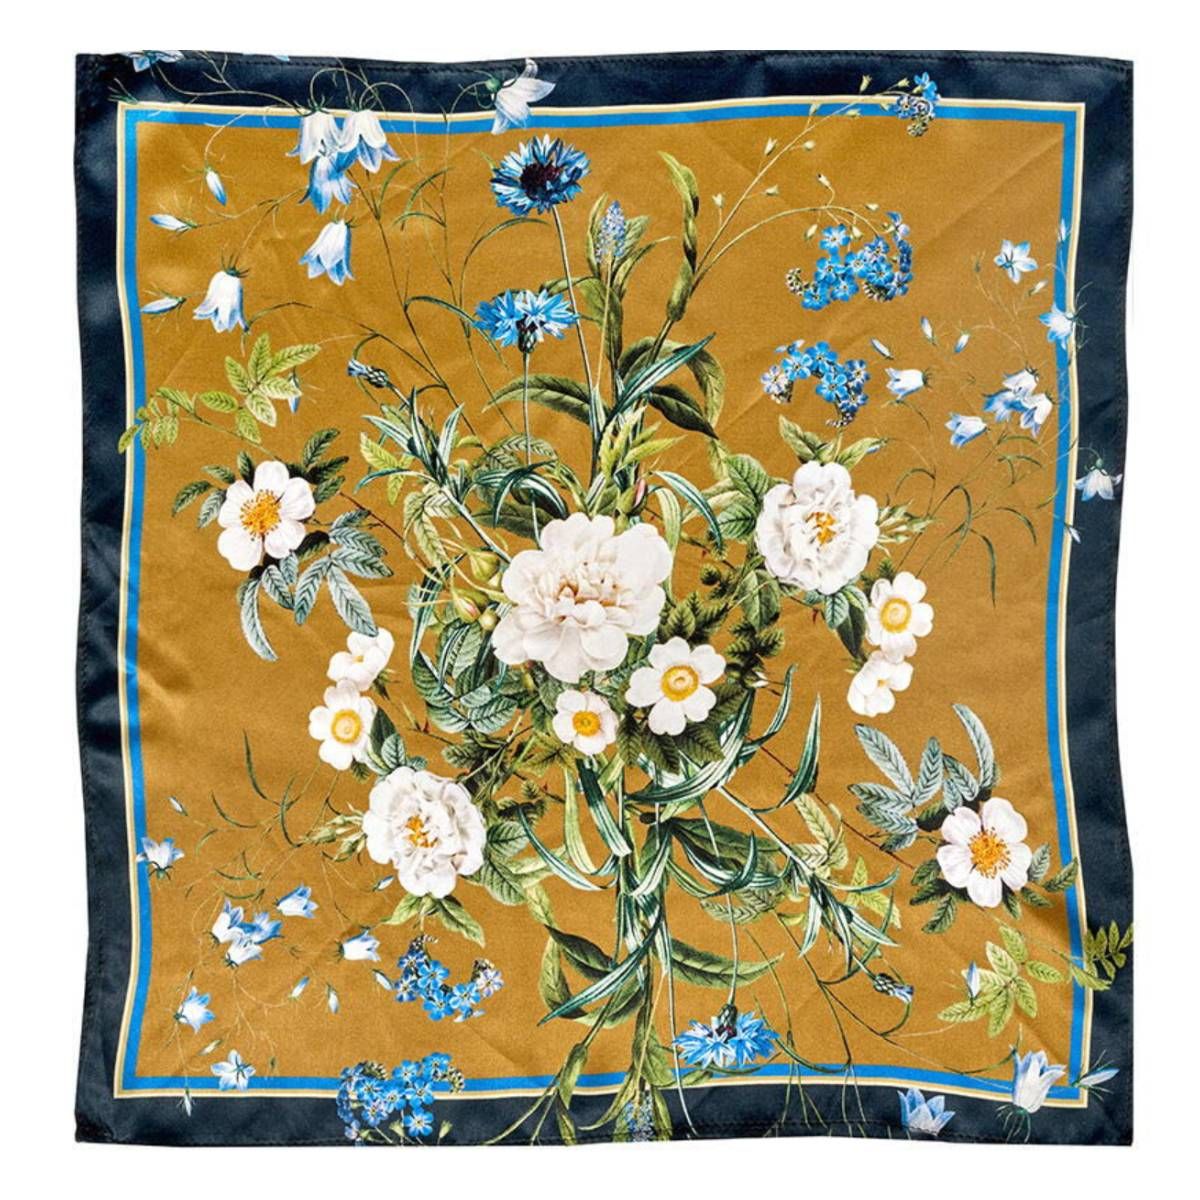 Silketørklæde med guld grundfarve pyntet med blå og hvide blomster designet af Jim Lyngvild